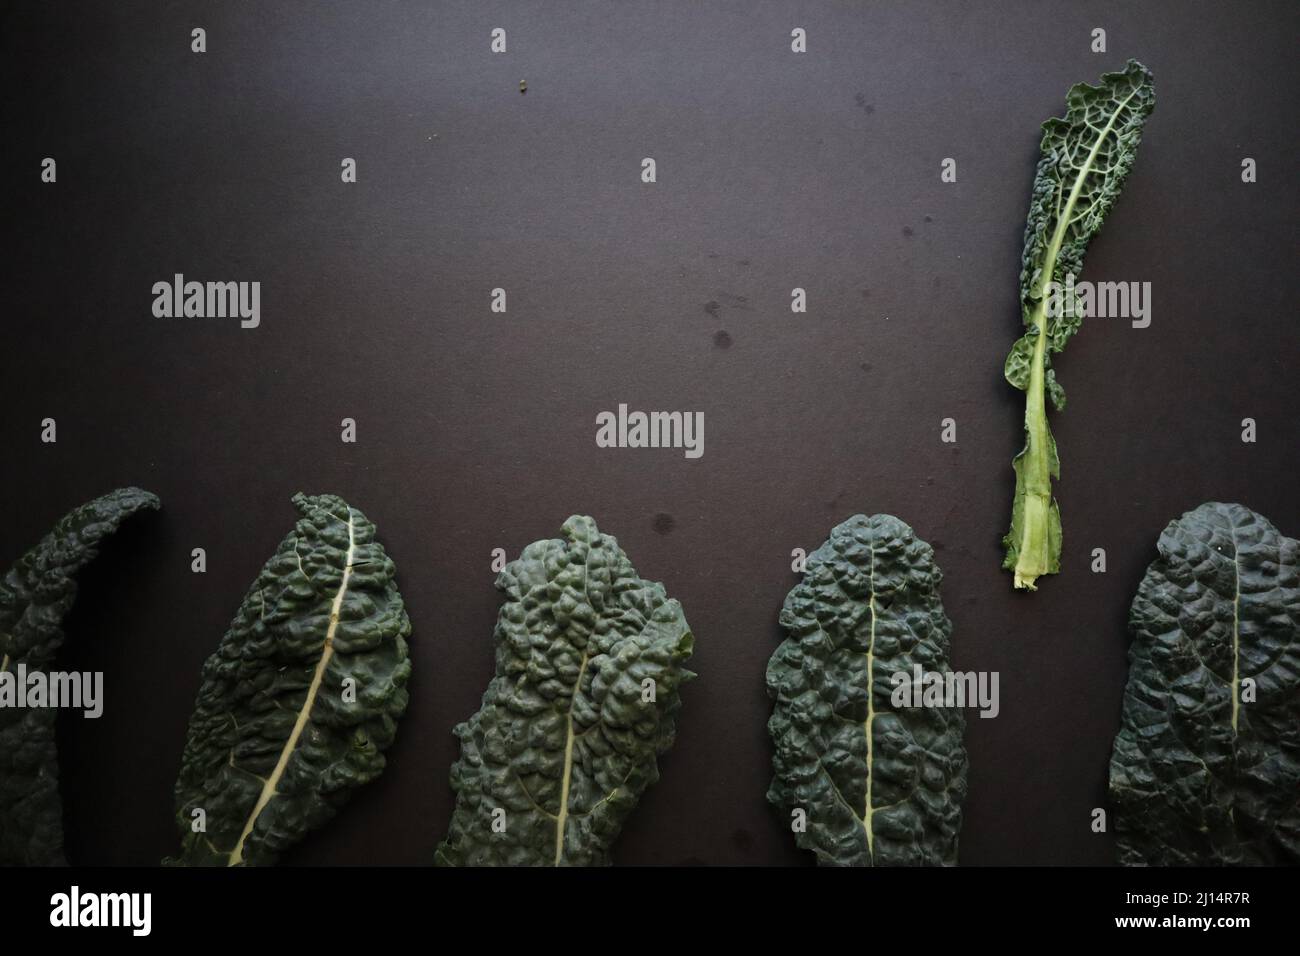 Kale on Black Background Stock Photo